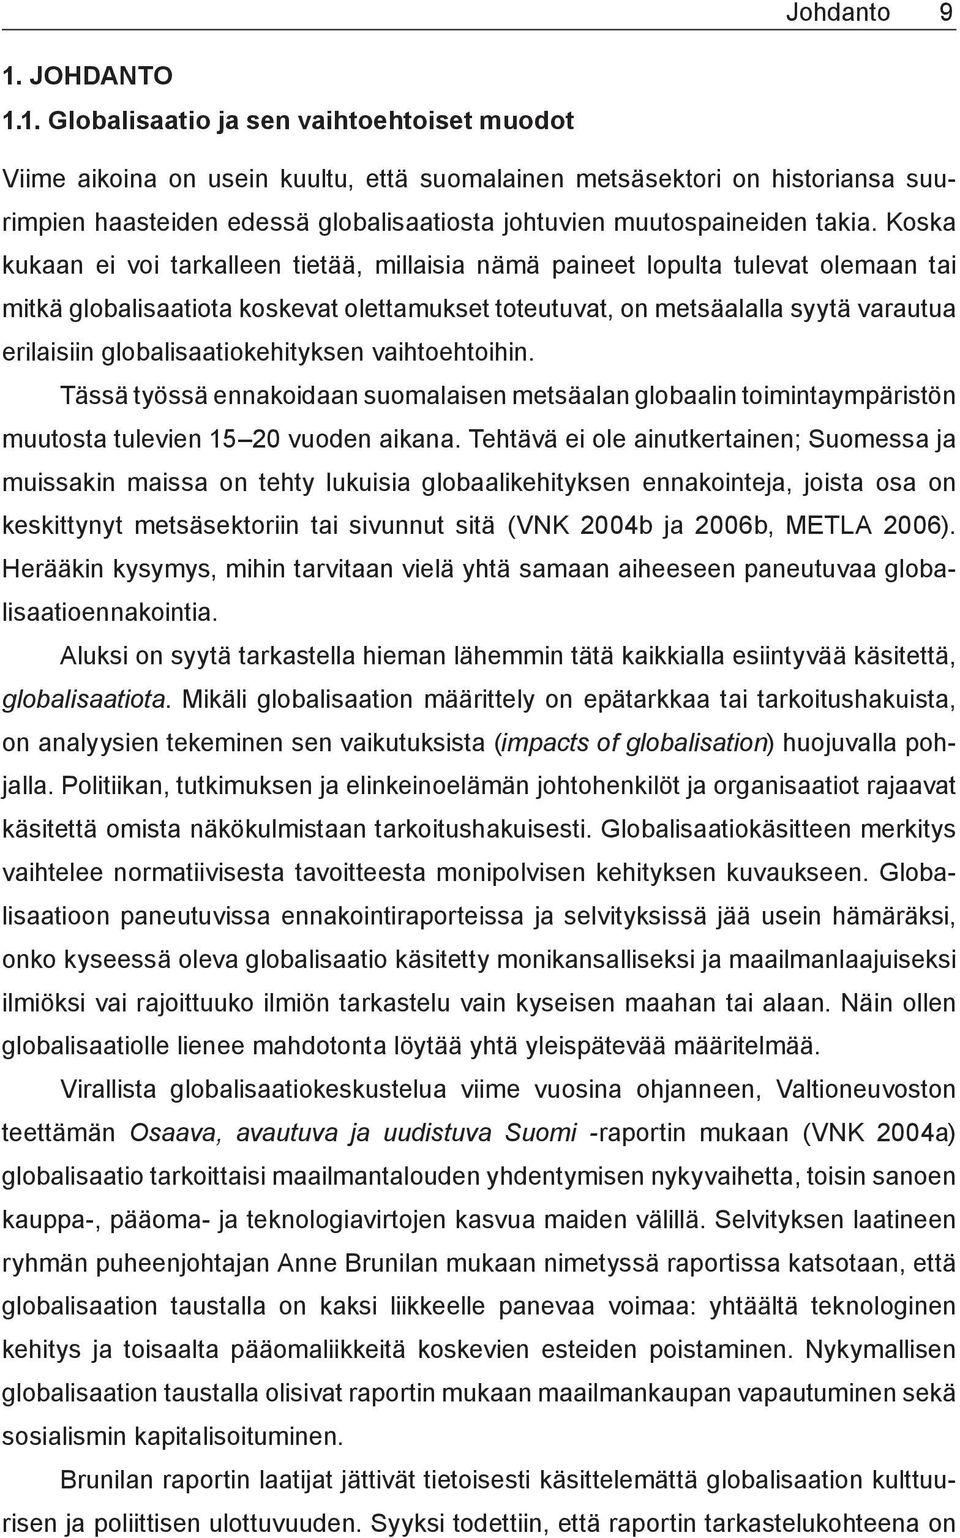 1. Globalisaatio ja sen vaihtoehtoiset muodot Viime aikoina on usein kuultu, että suomalainen metsäsektori on historiansa suurimpien haasteiden edessä globalisaatiosta johtuvien muutospaineiden takia.